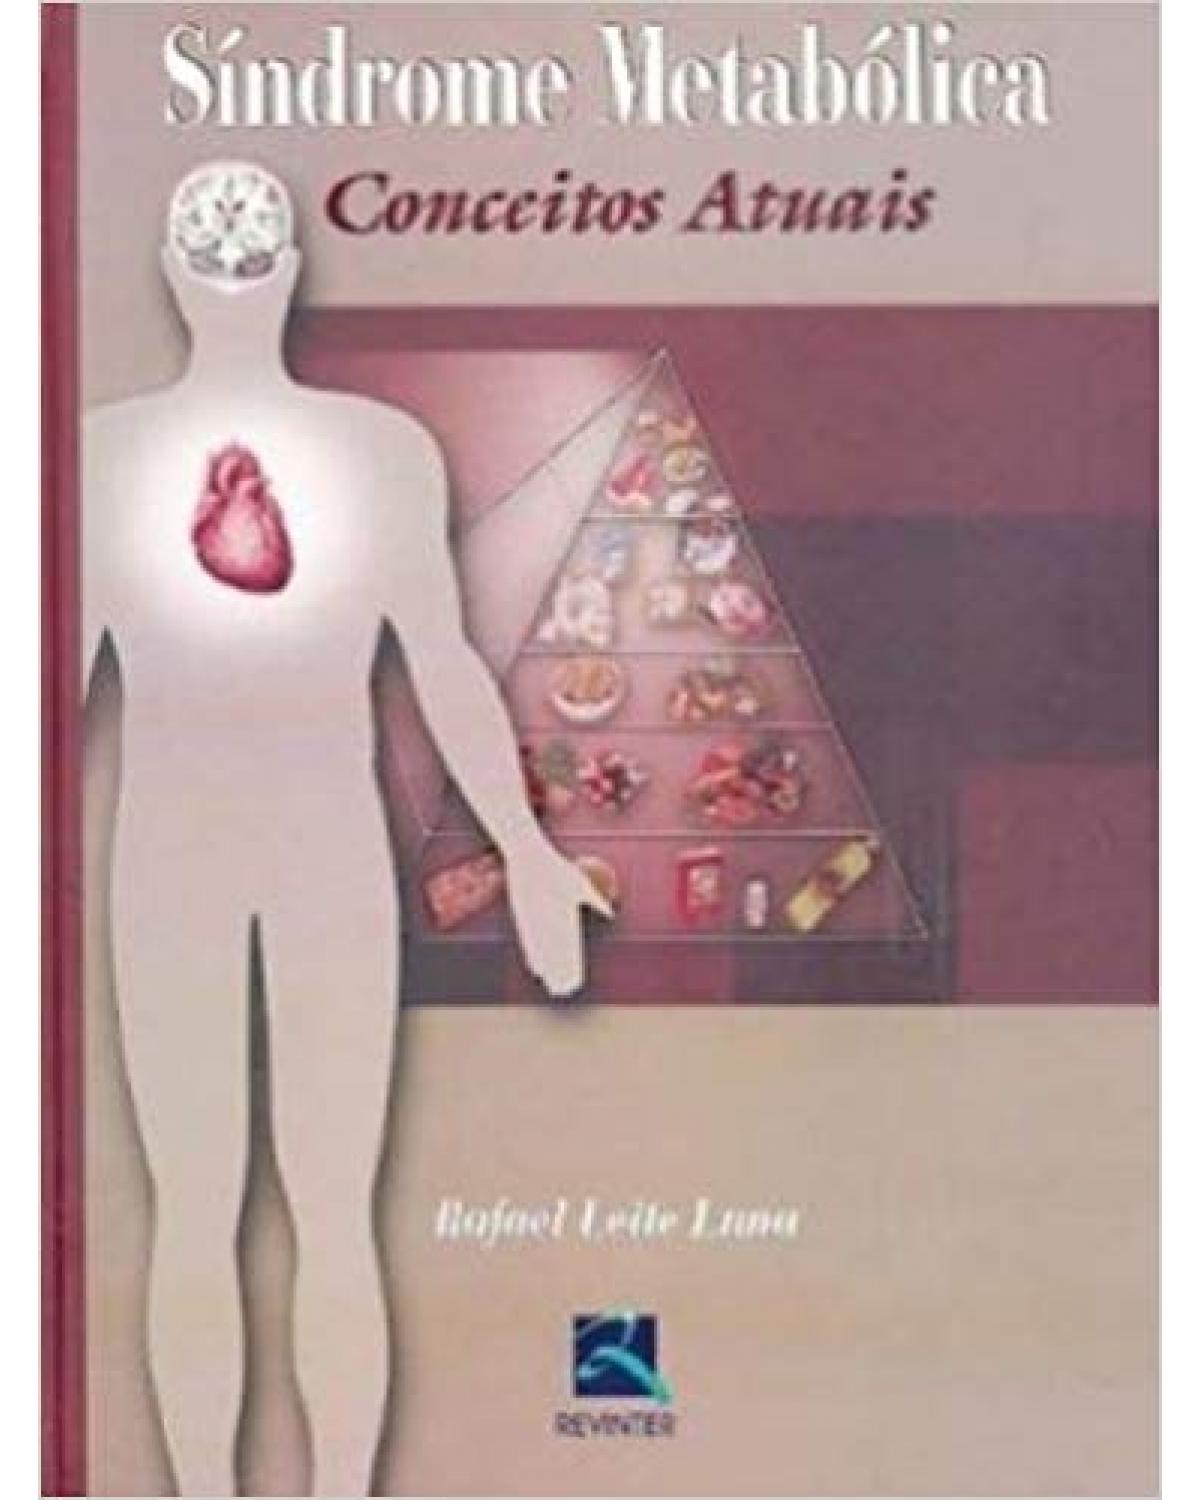 Síndrome metabólica - conceitos atuais - 1ª Edição | 2006